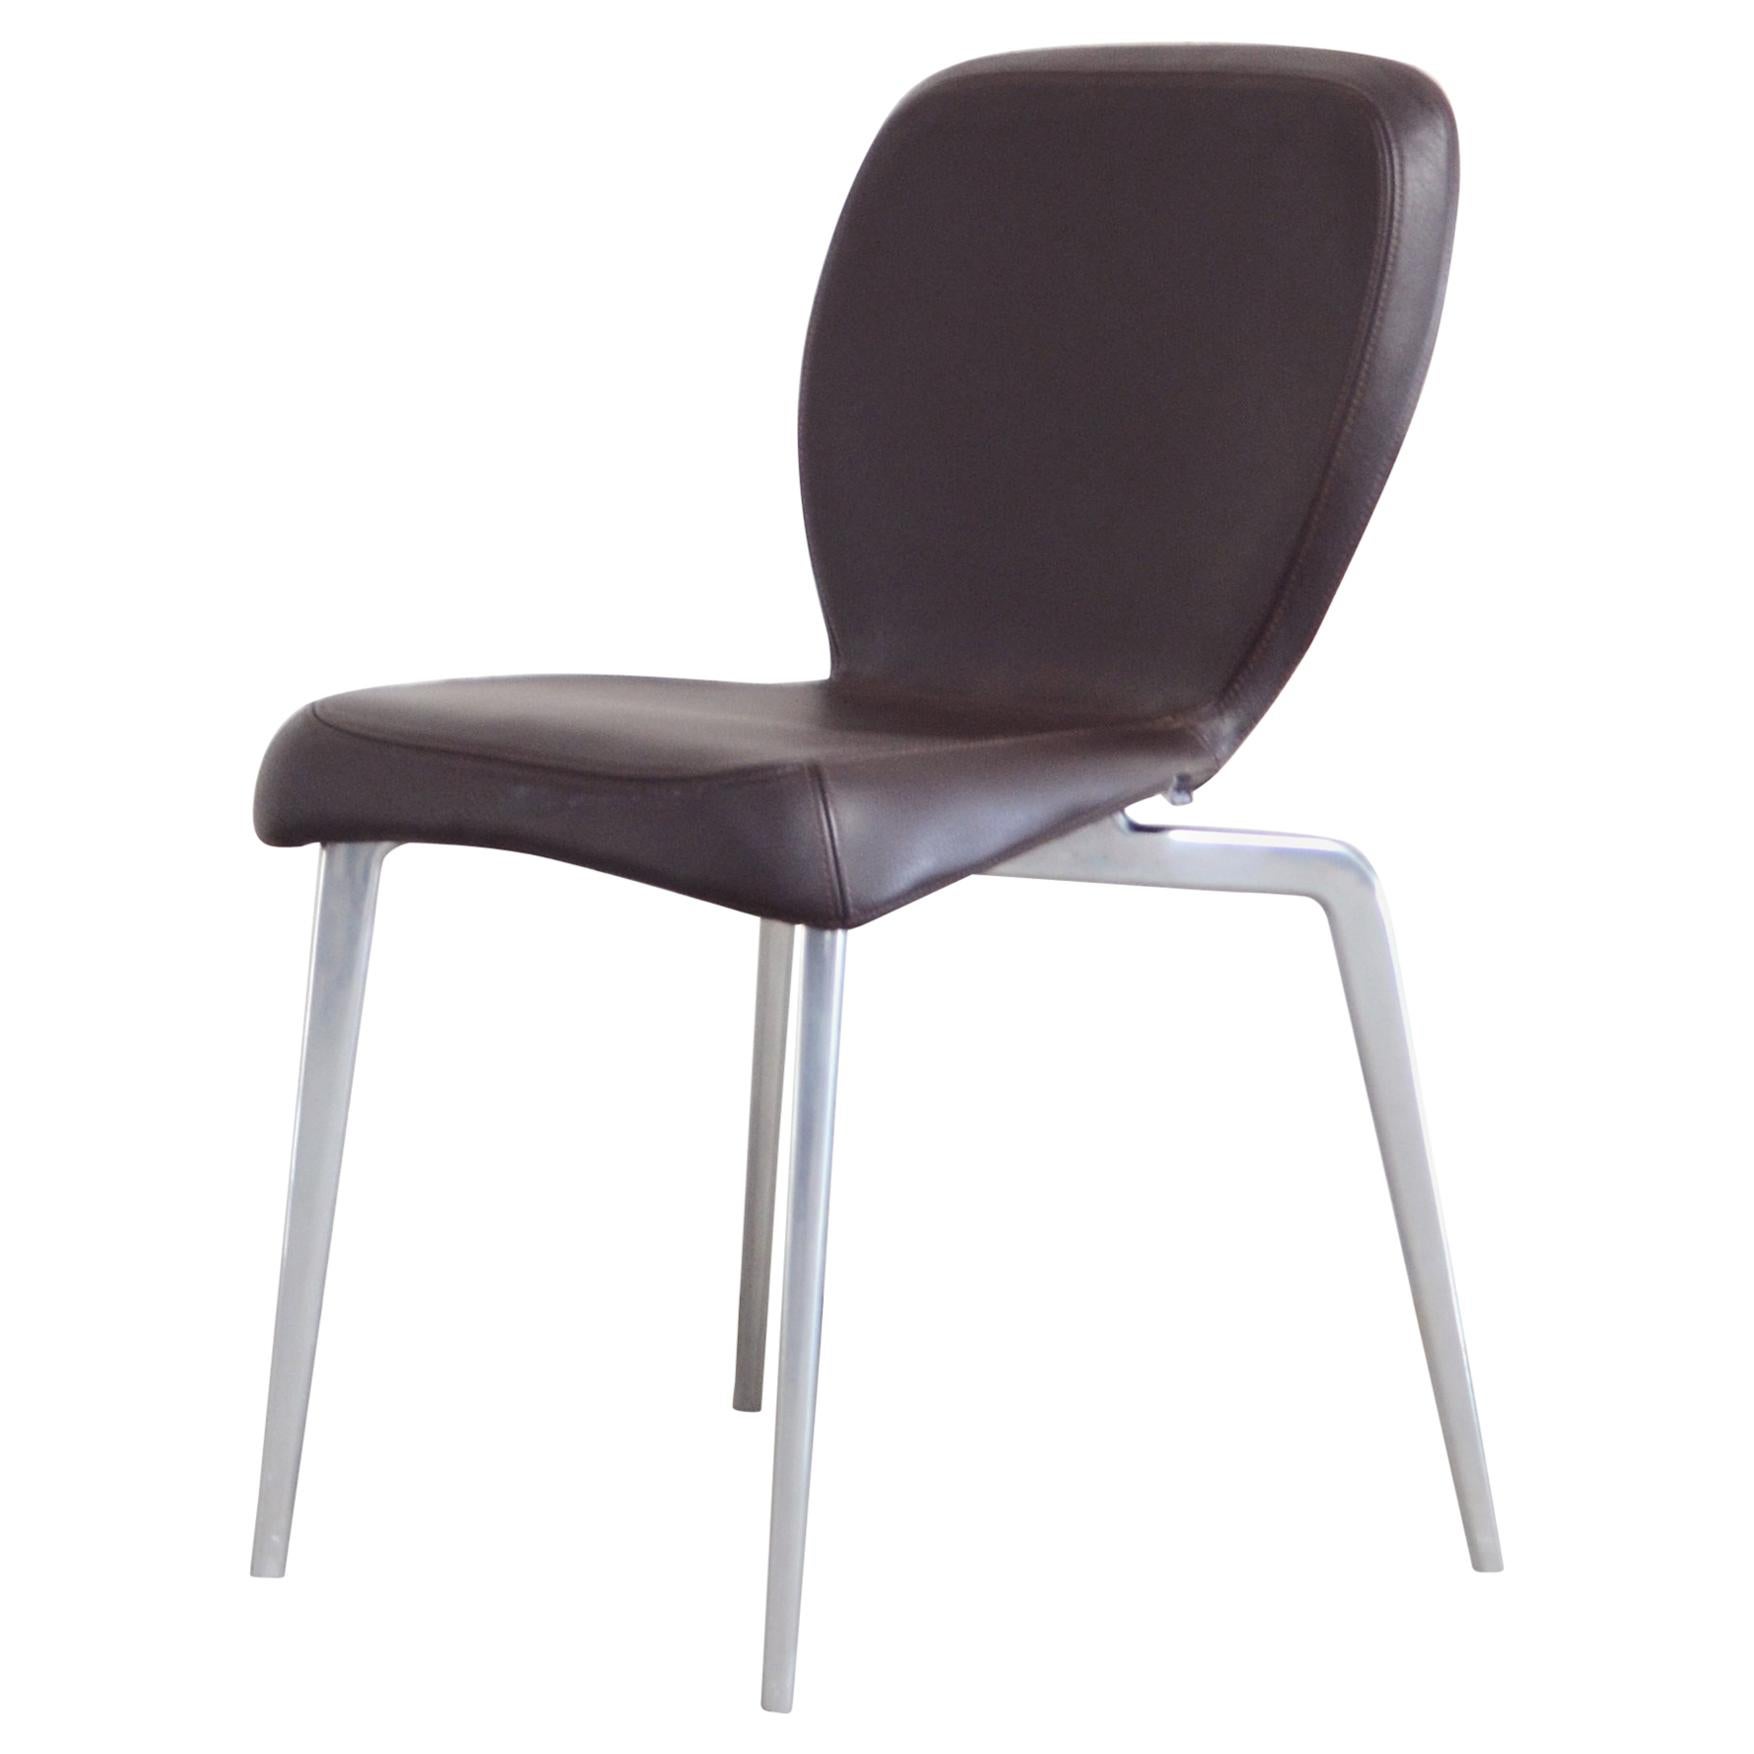 Seltener Prototyp eines ClassiCon München-Stuhls aus braunem Leder